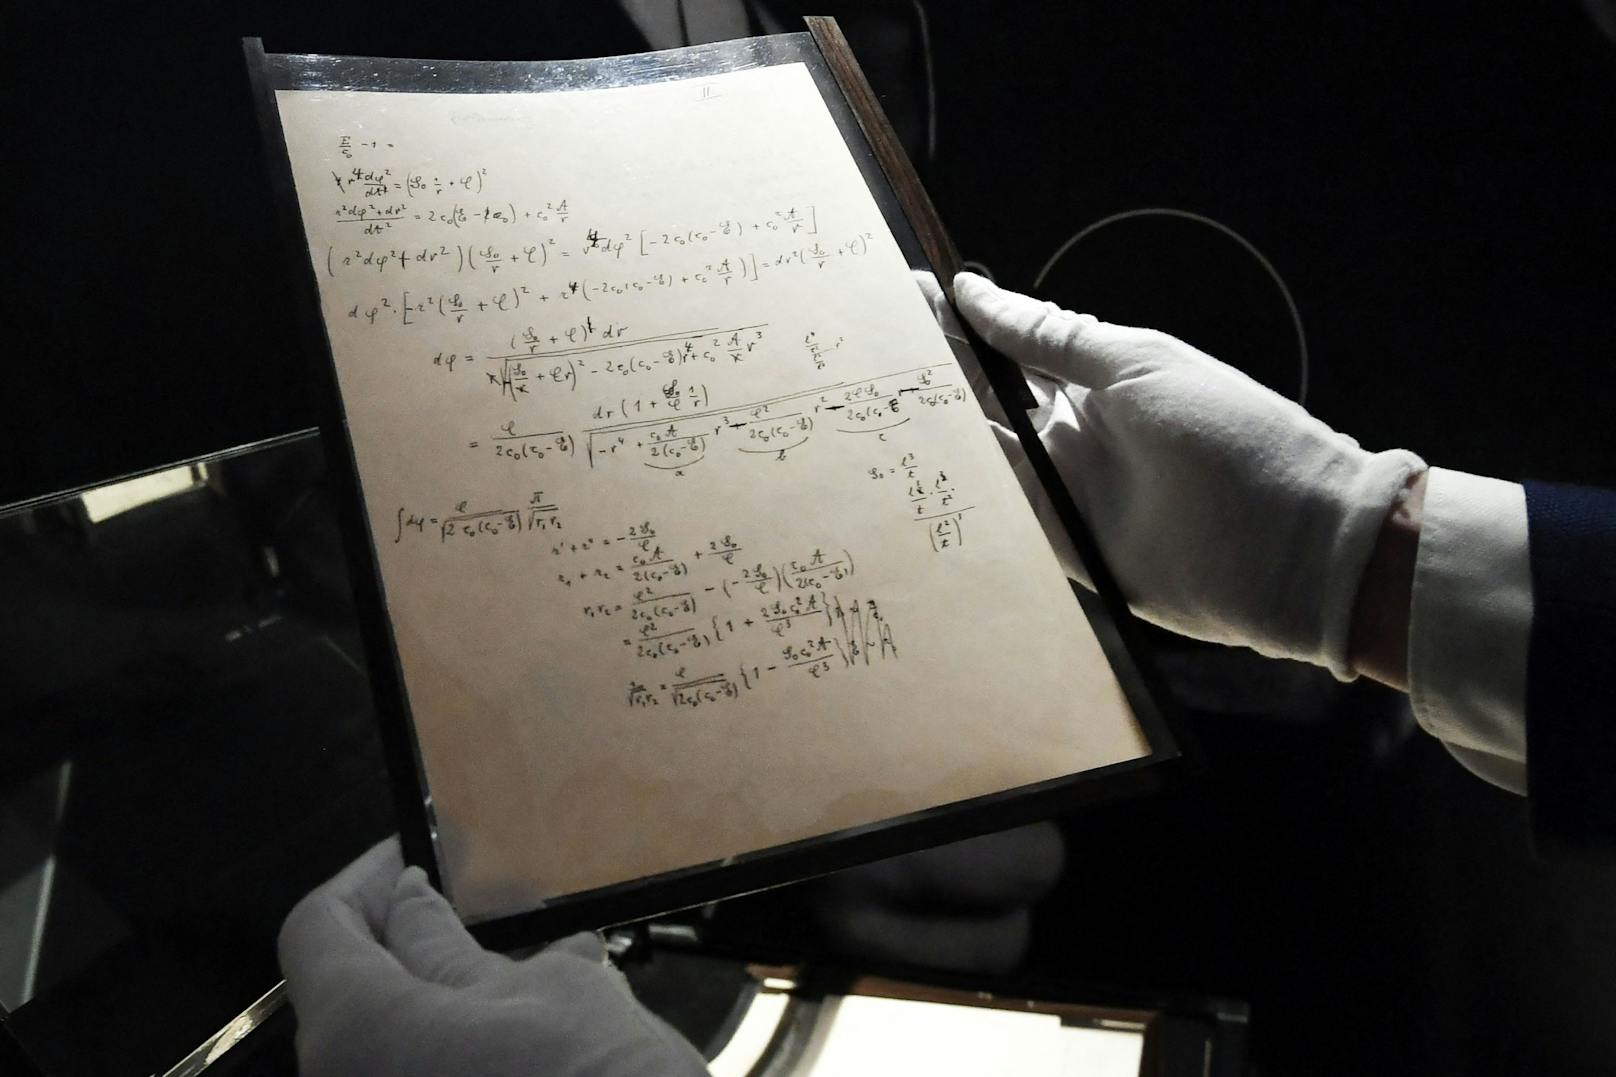 Rekordsumme für Manuskript von Albert Einstein